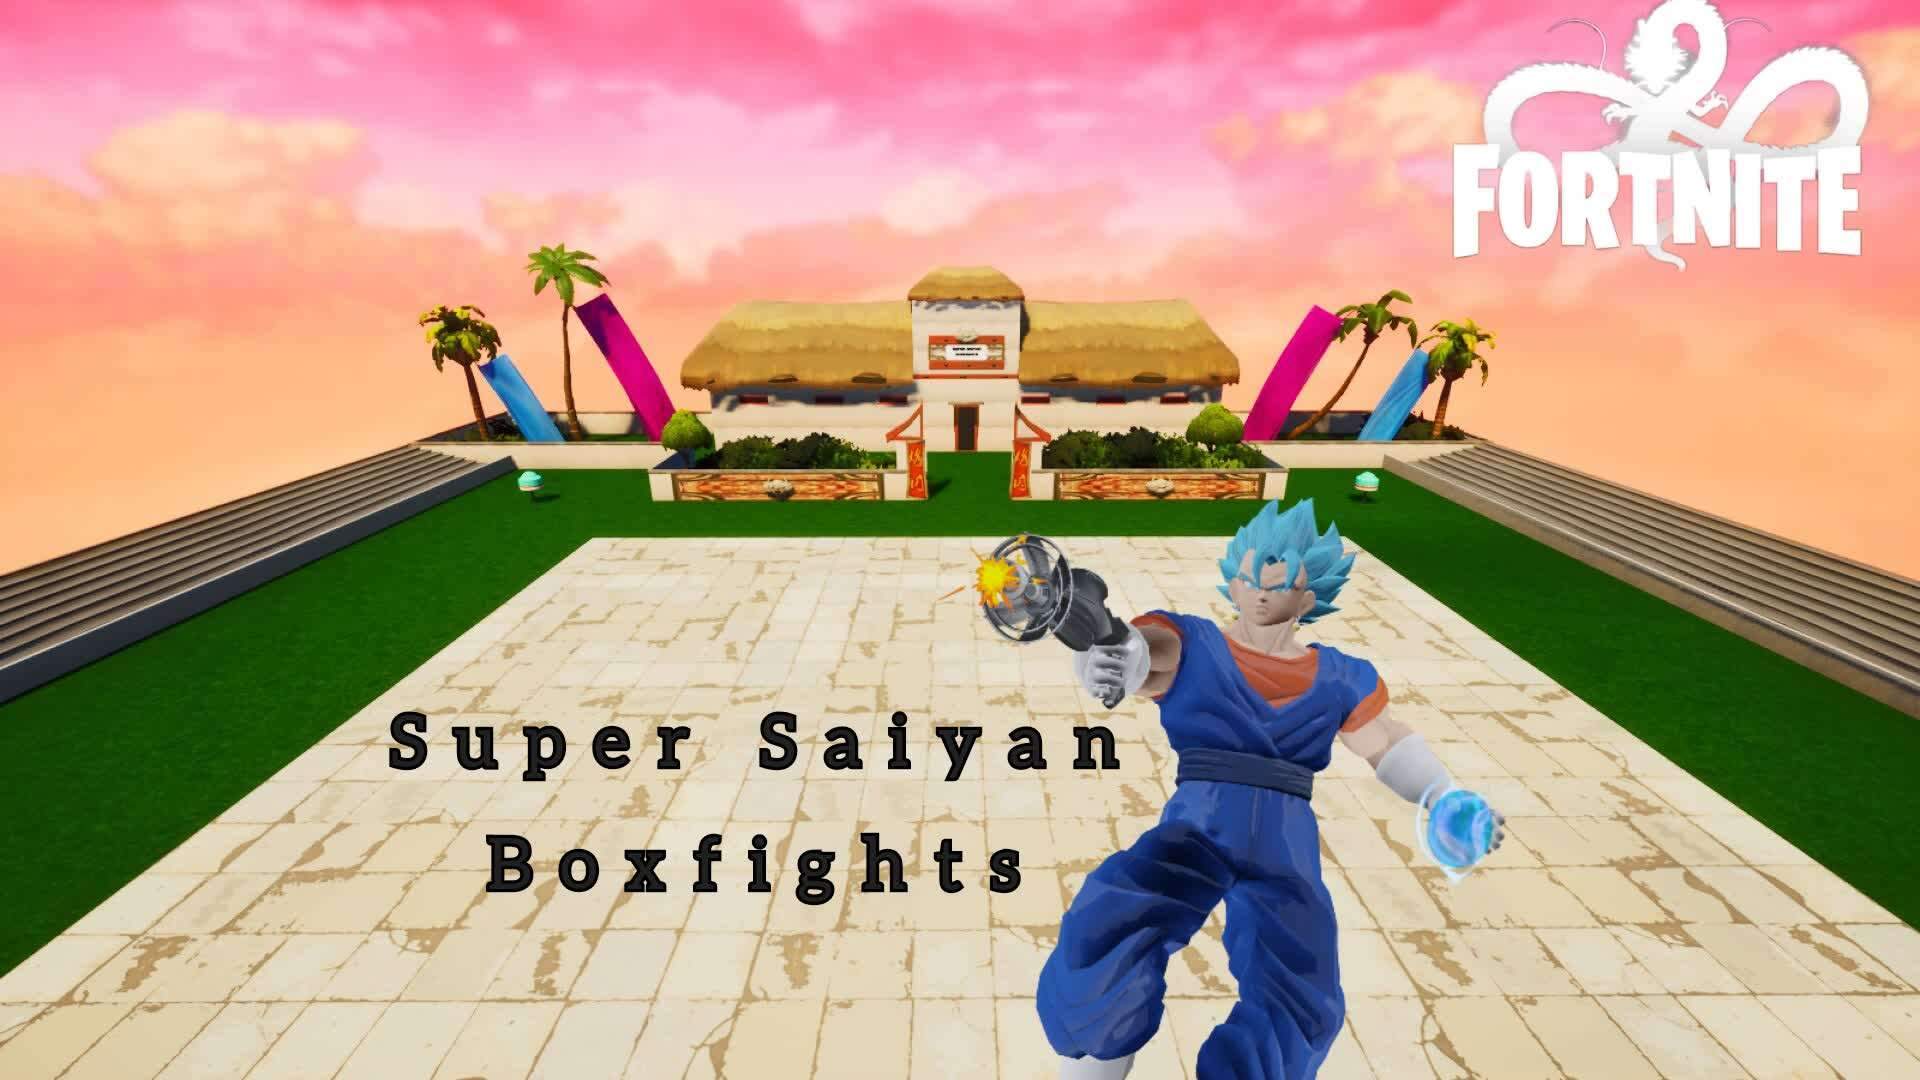 Super Saiyan Boxfights